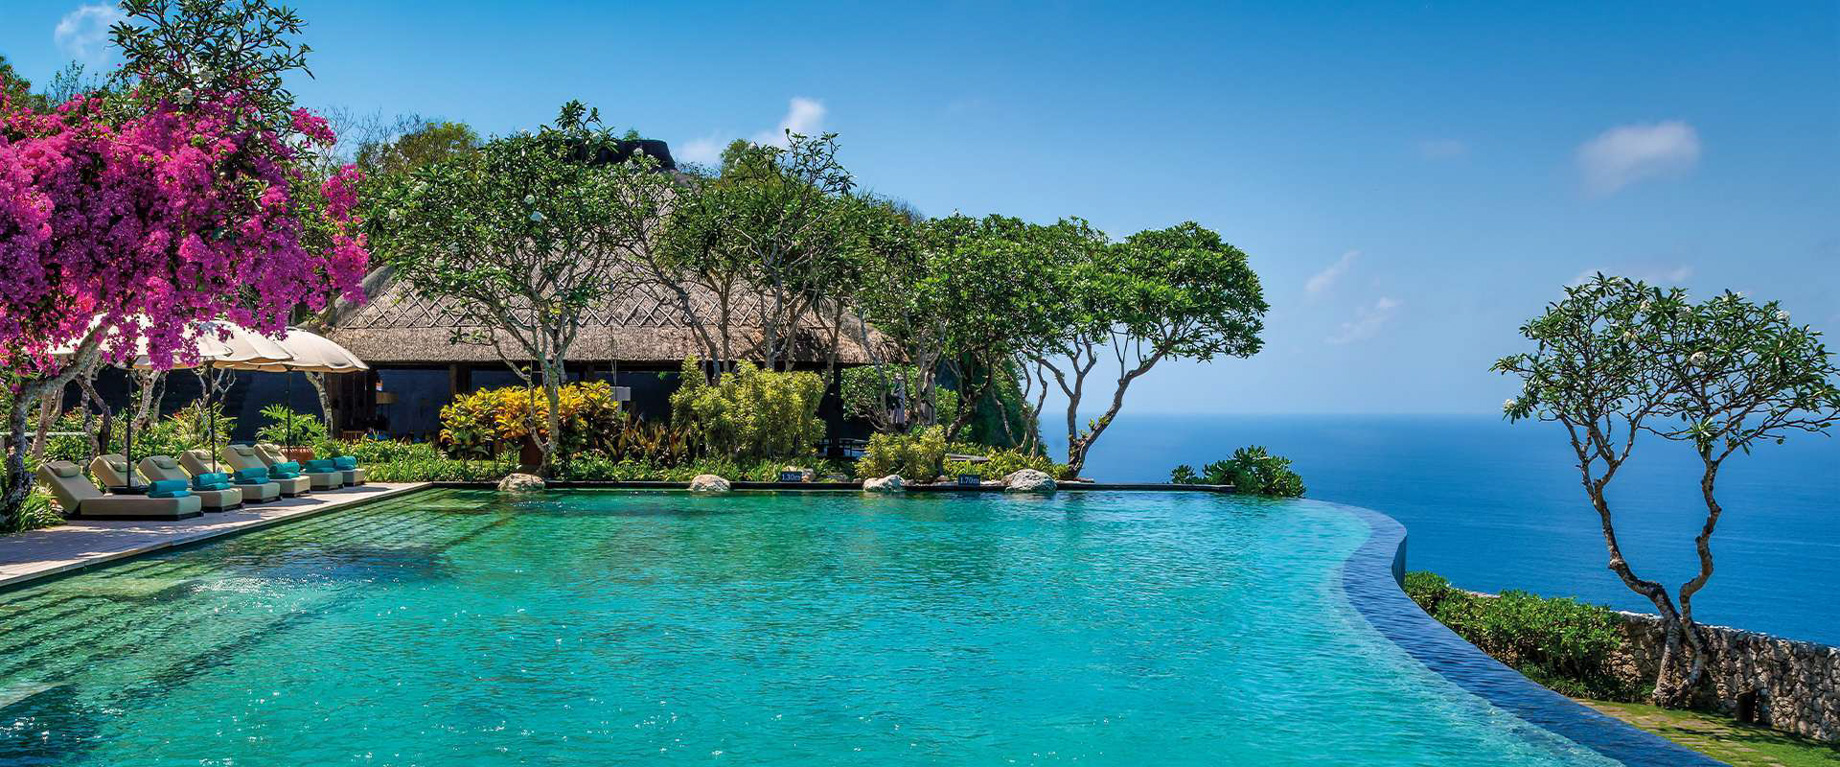 Bvlgari Resort Bali – Uluwatu, Bali, Indonesia – Infinity Pool Ocean View